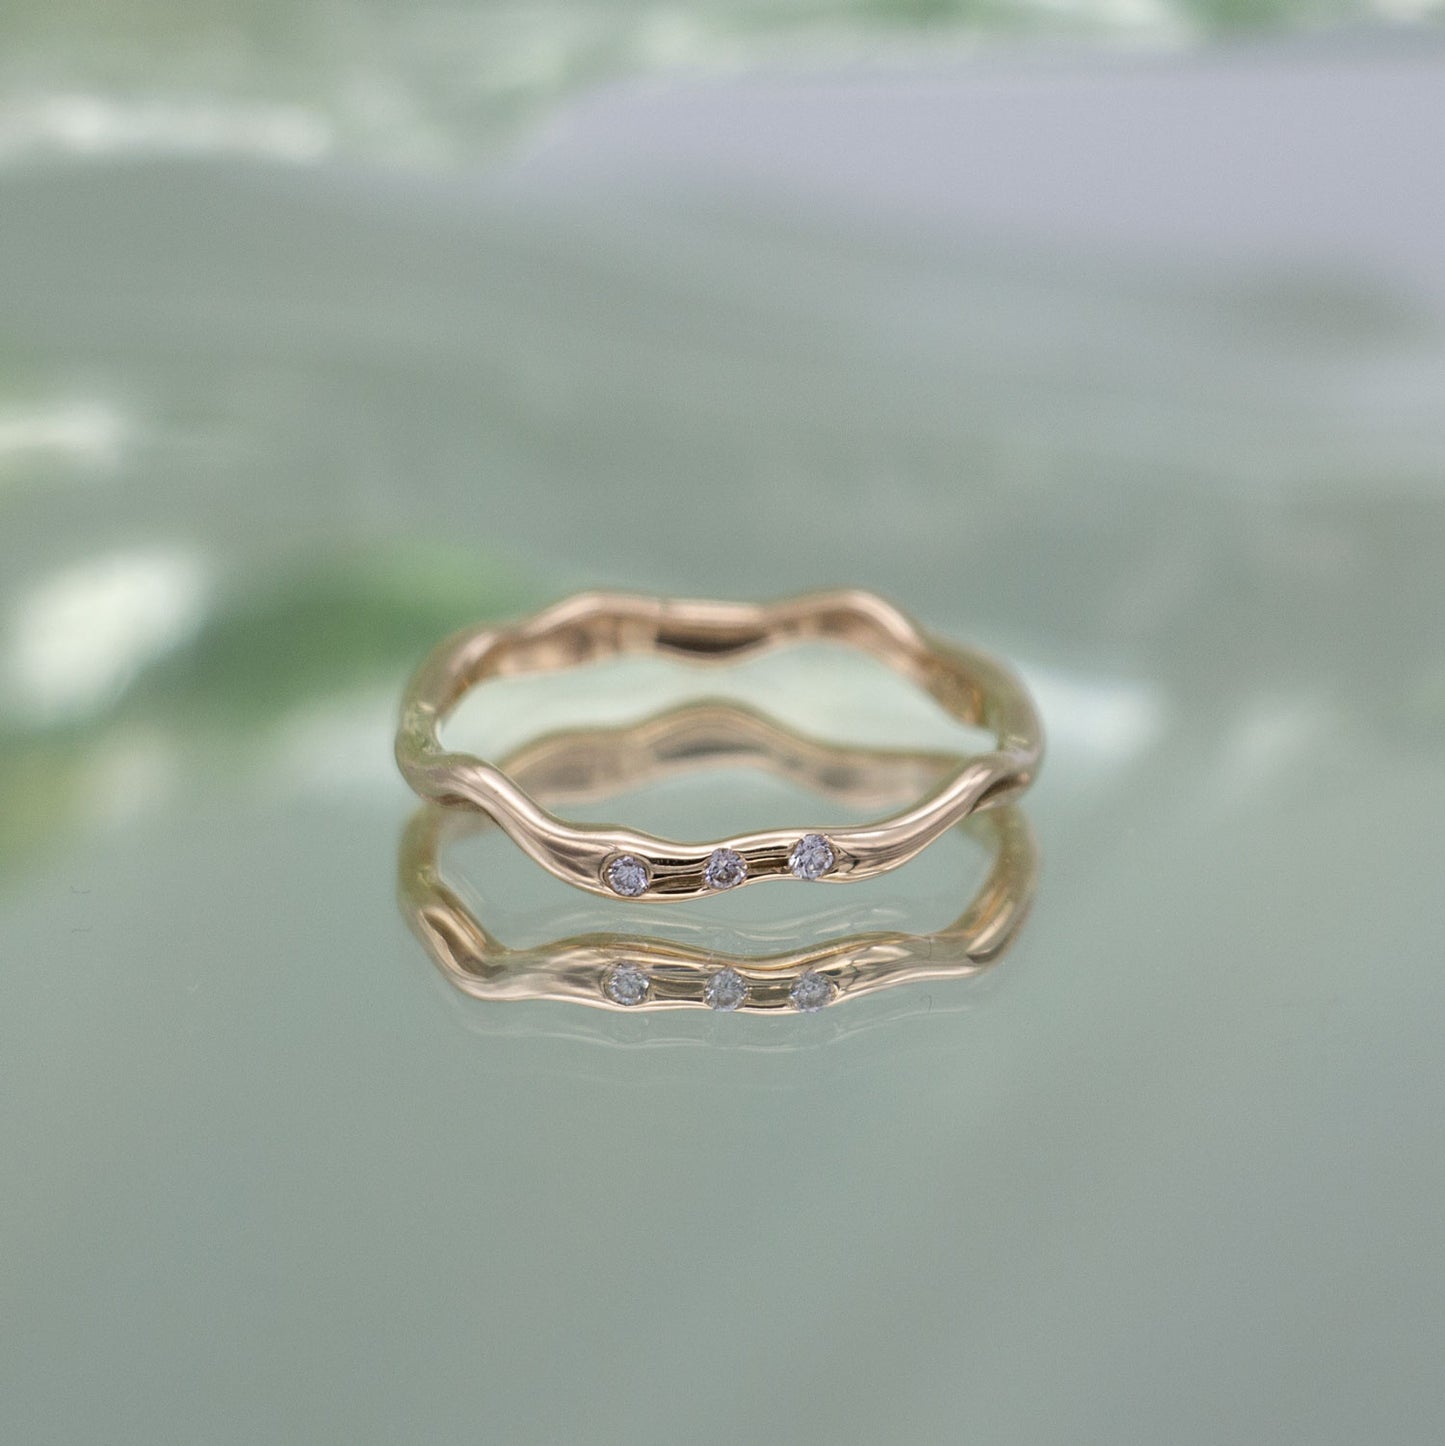 En ring i guld med tre diamanter ligger på en spejlende overflade med grønlige nuancer.  Ringen har tre fairtrade diamanter og er organisk formgivet.